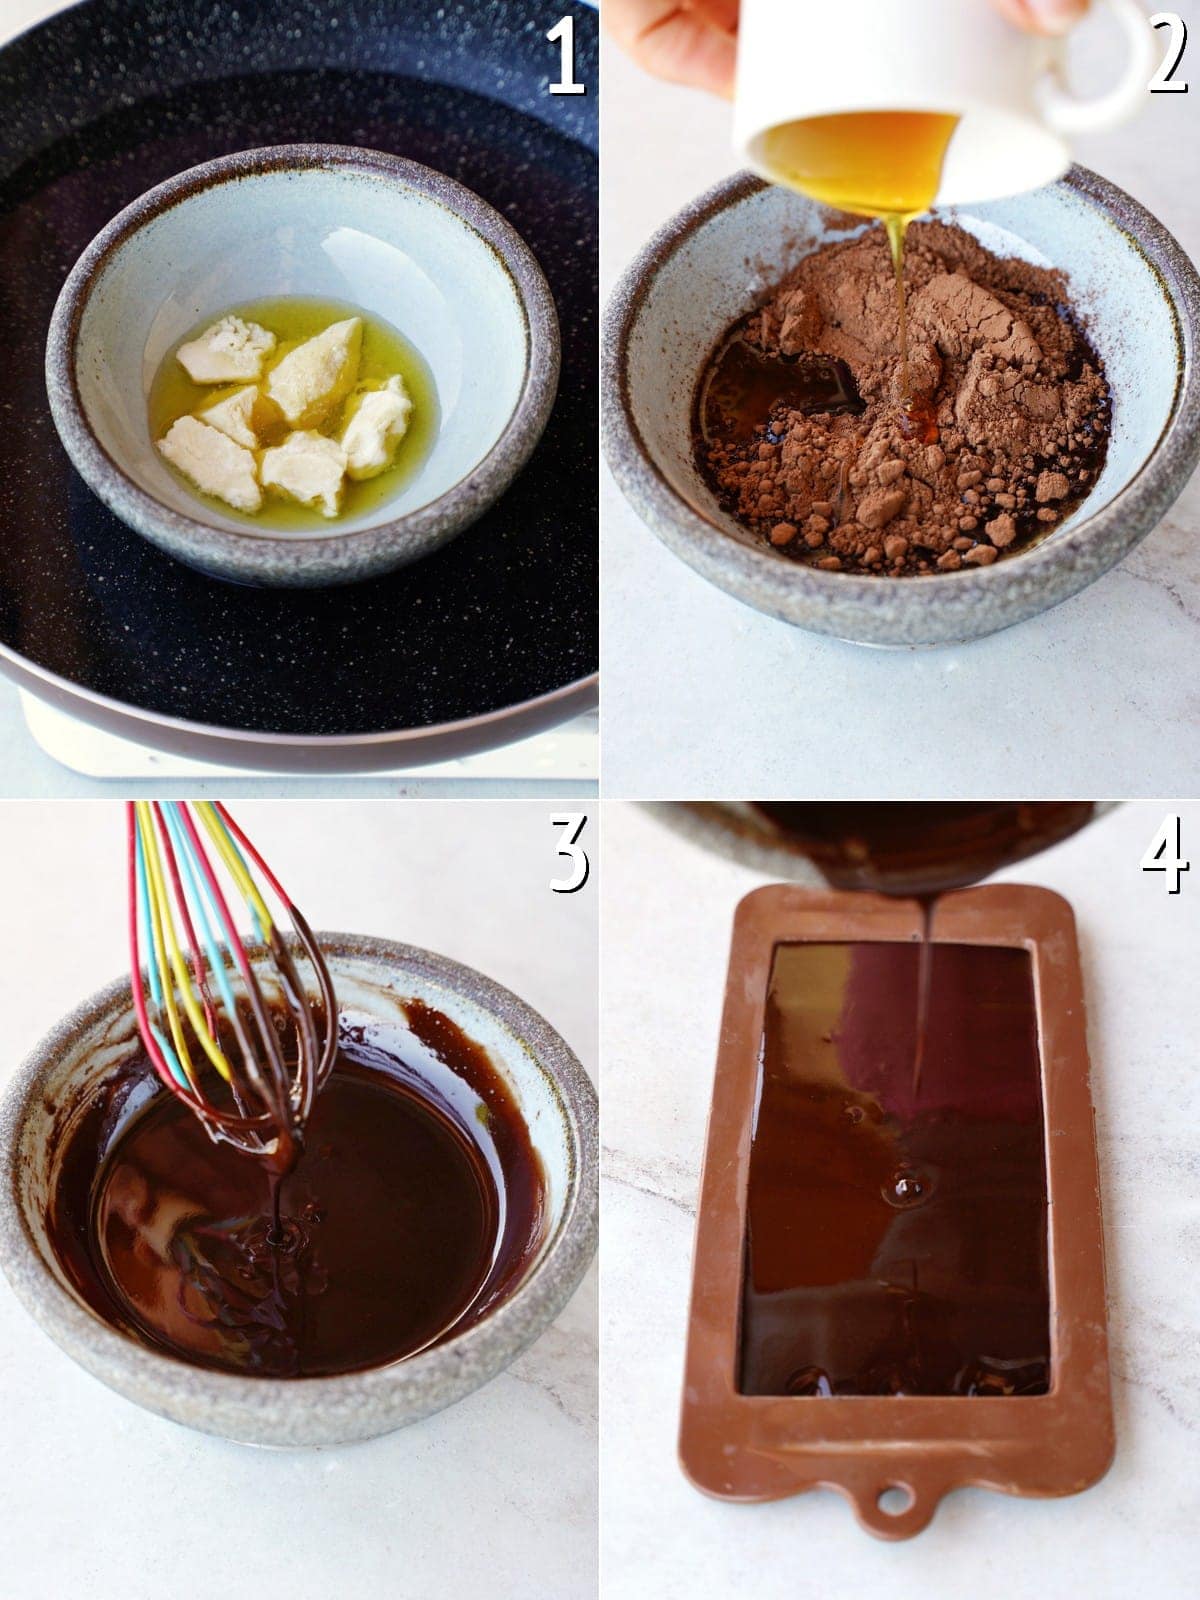 4 Bilder, die Schritt für Schritt zeigen, wie man Schokolade selber machen kann